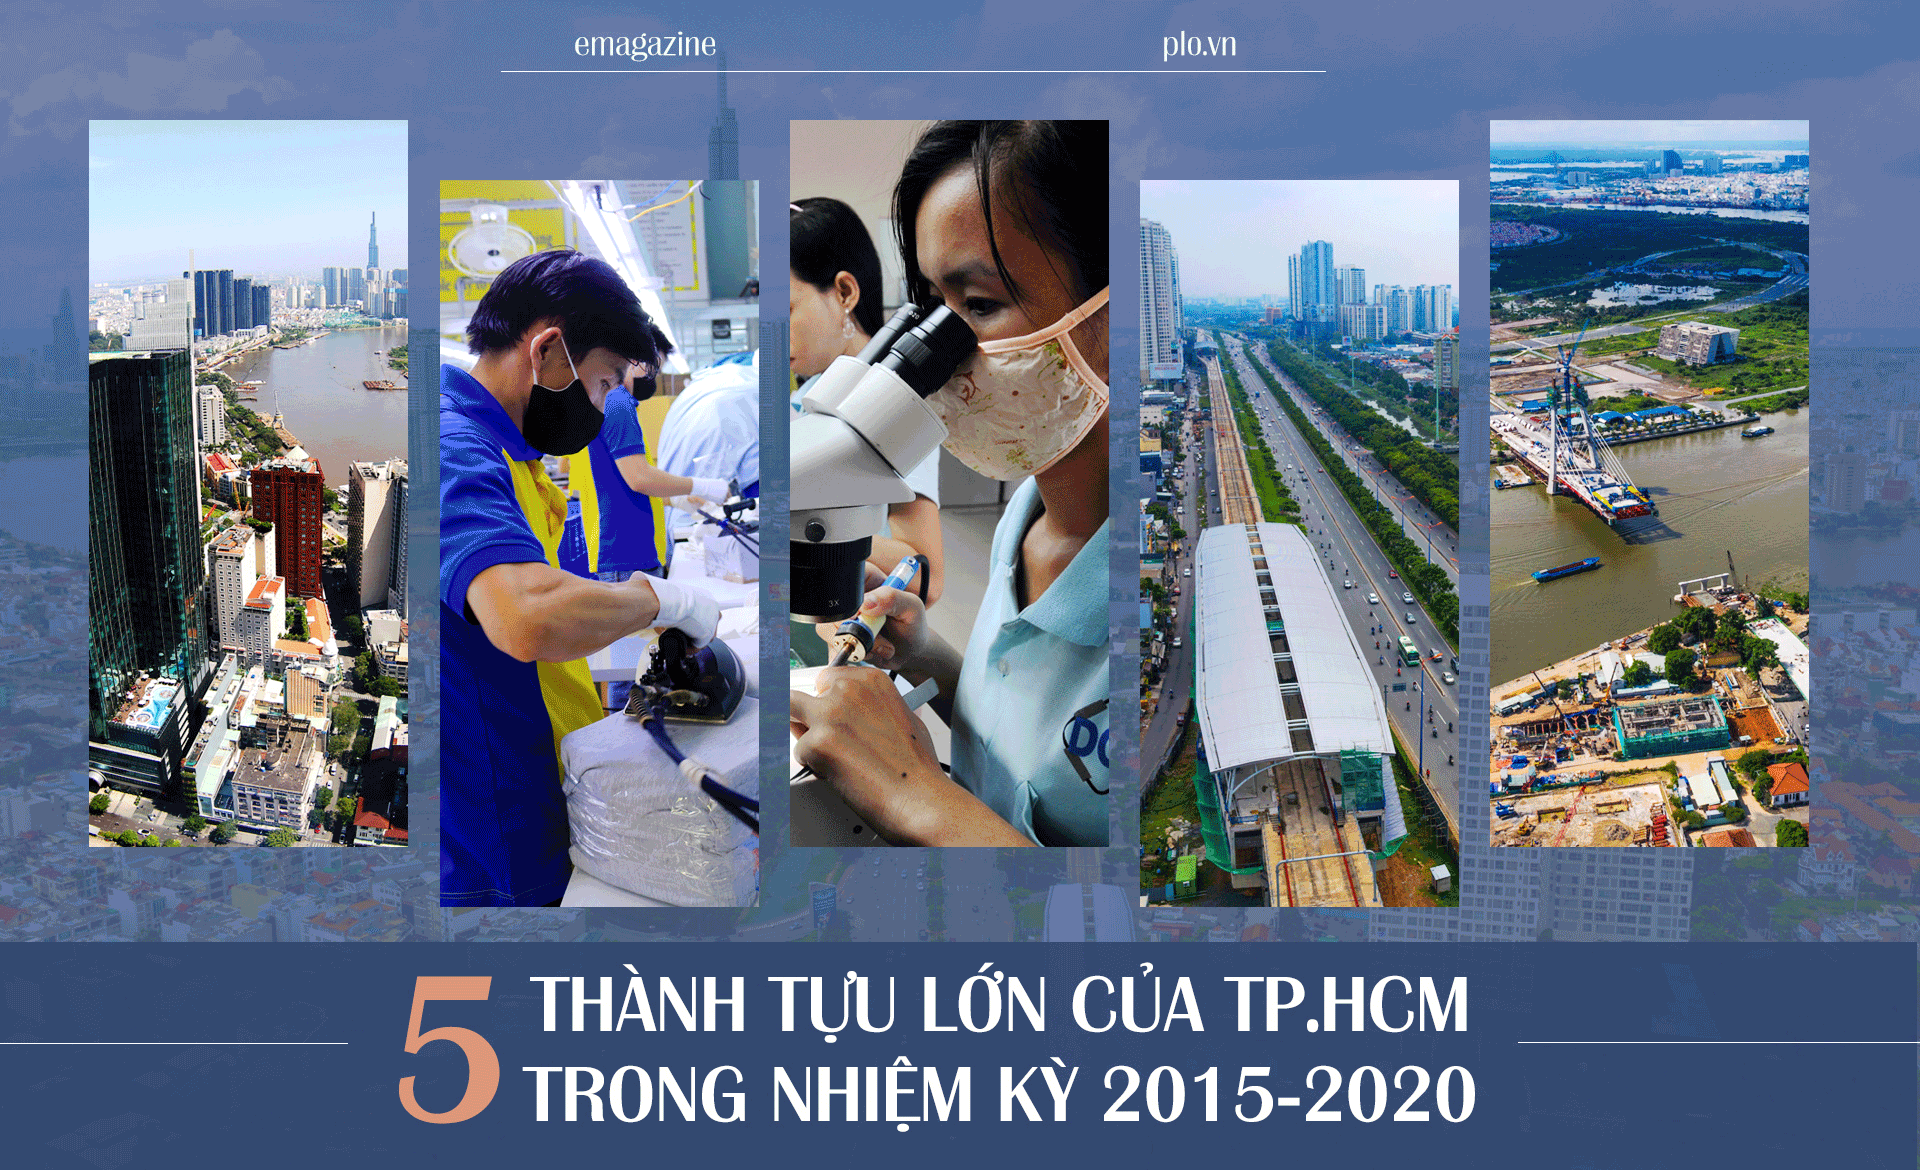 Emagazine: 5 thành tựu lớn của TP.HCM trong nhiệm kỳ 2015-2020